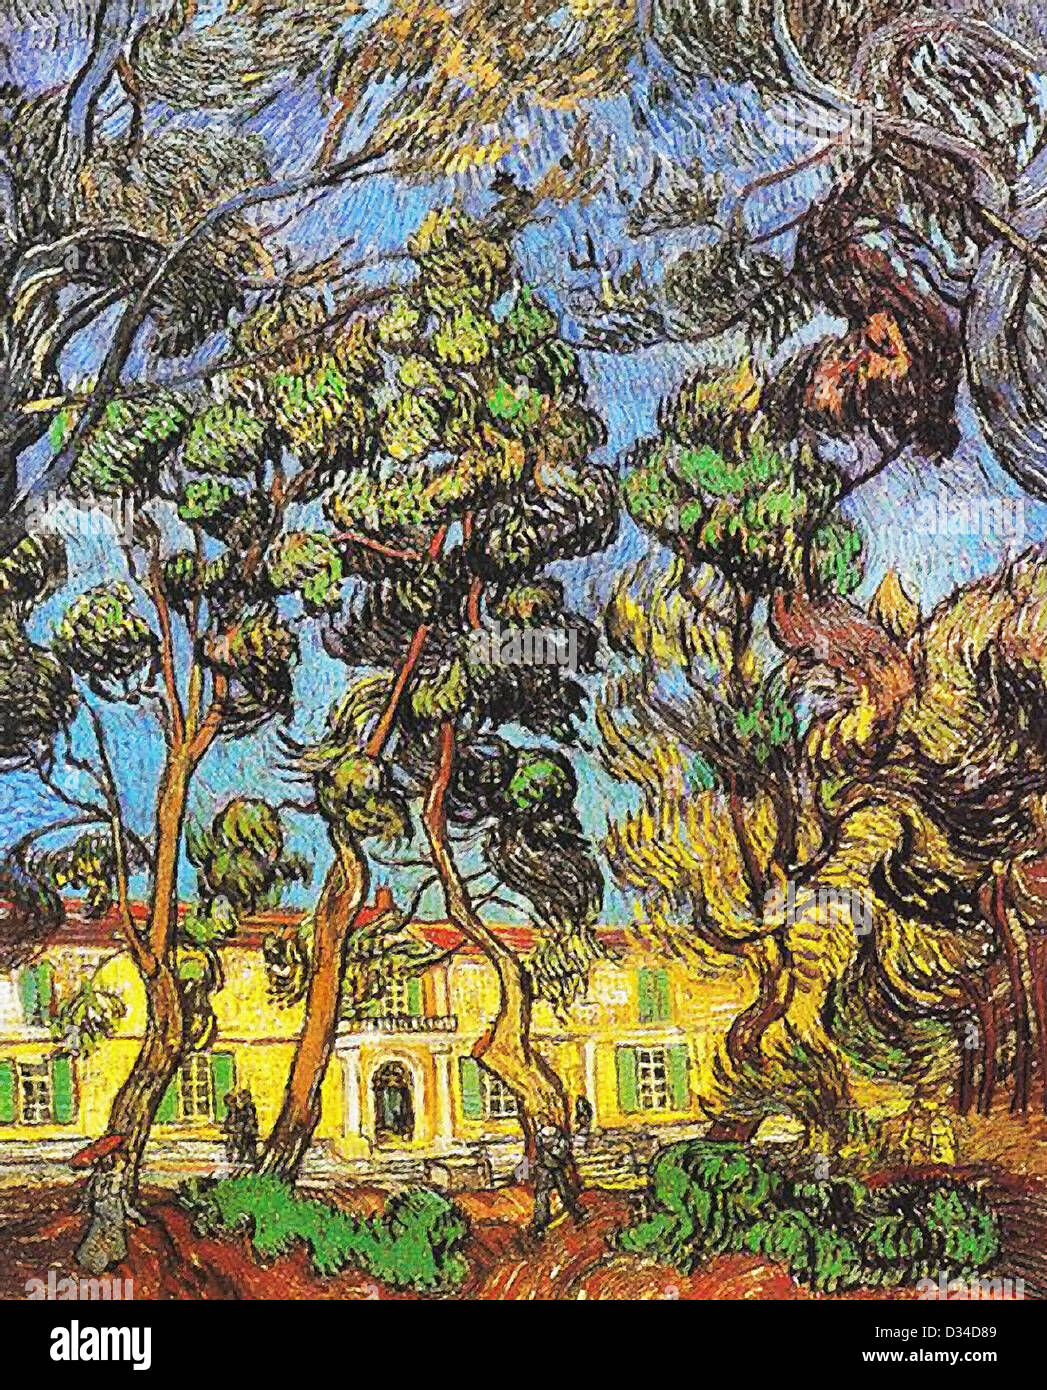 Vincent van Gogh, les arbres dans le jardin de l'hôpital Saint-Paul.1888.le postimpressionnisme. Huile sur toile.L'Armand Hammer Museum Banque D'Images